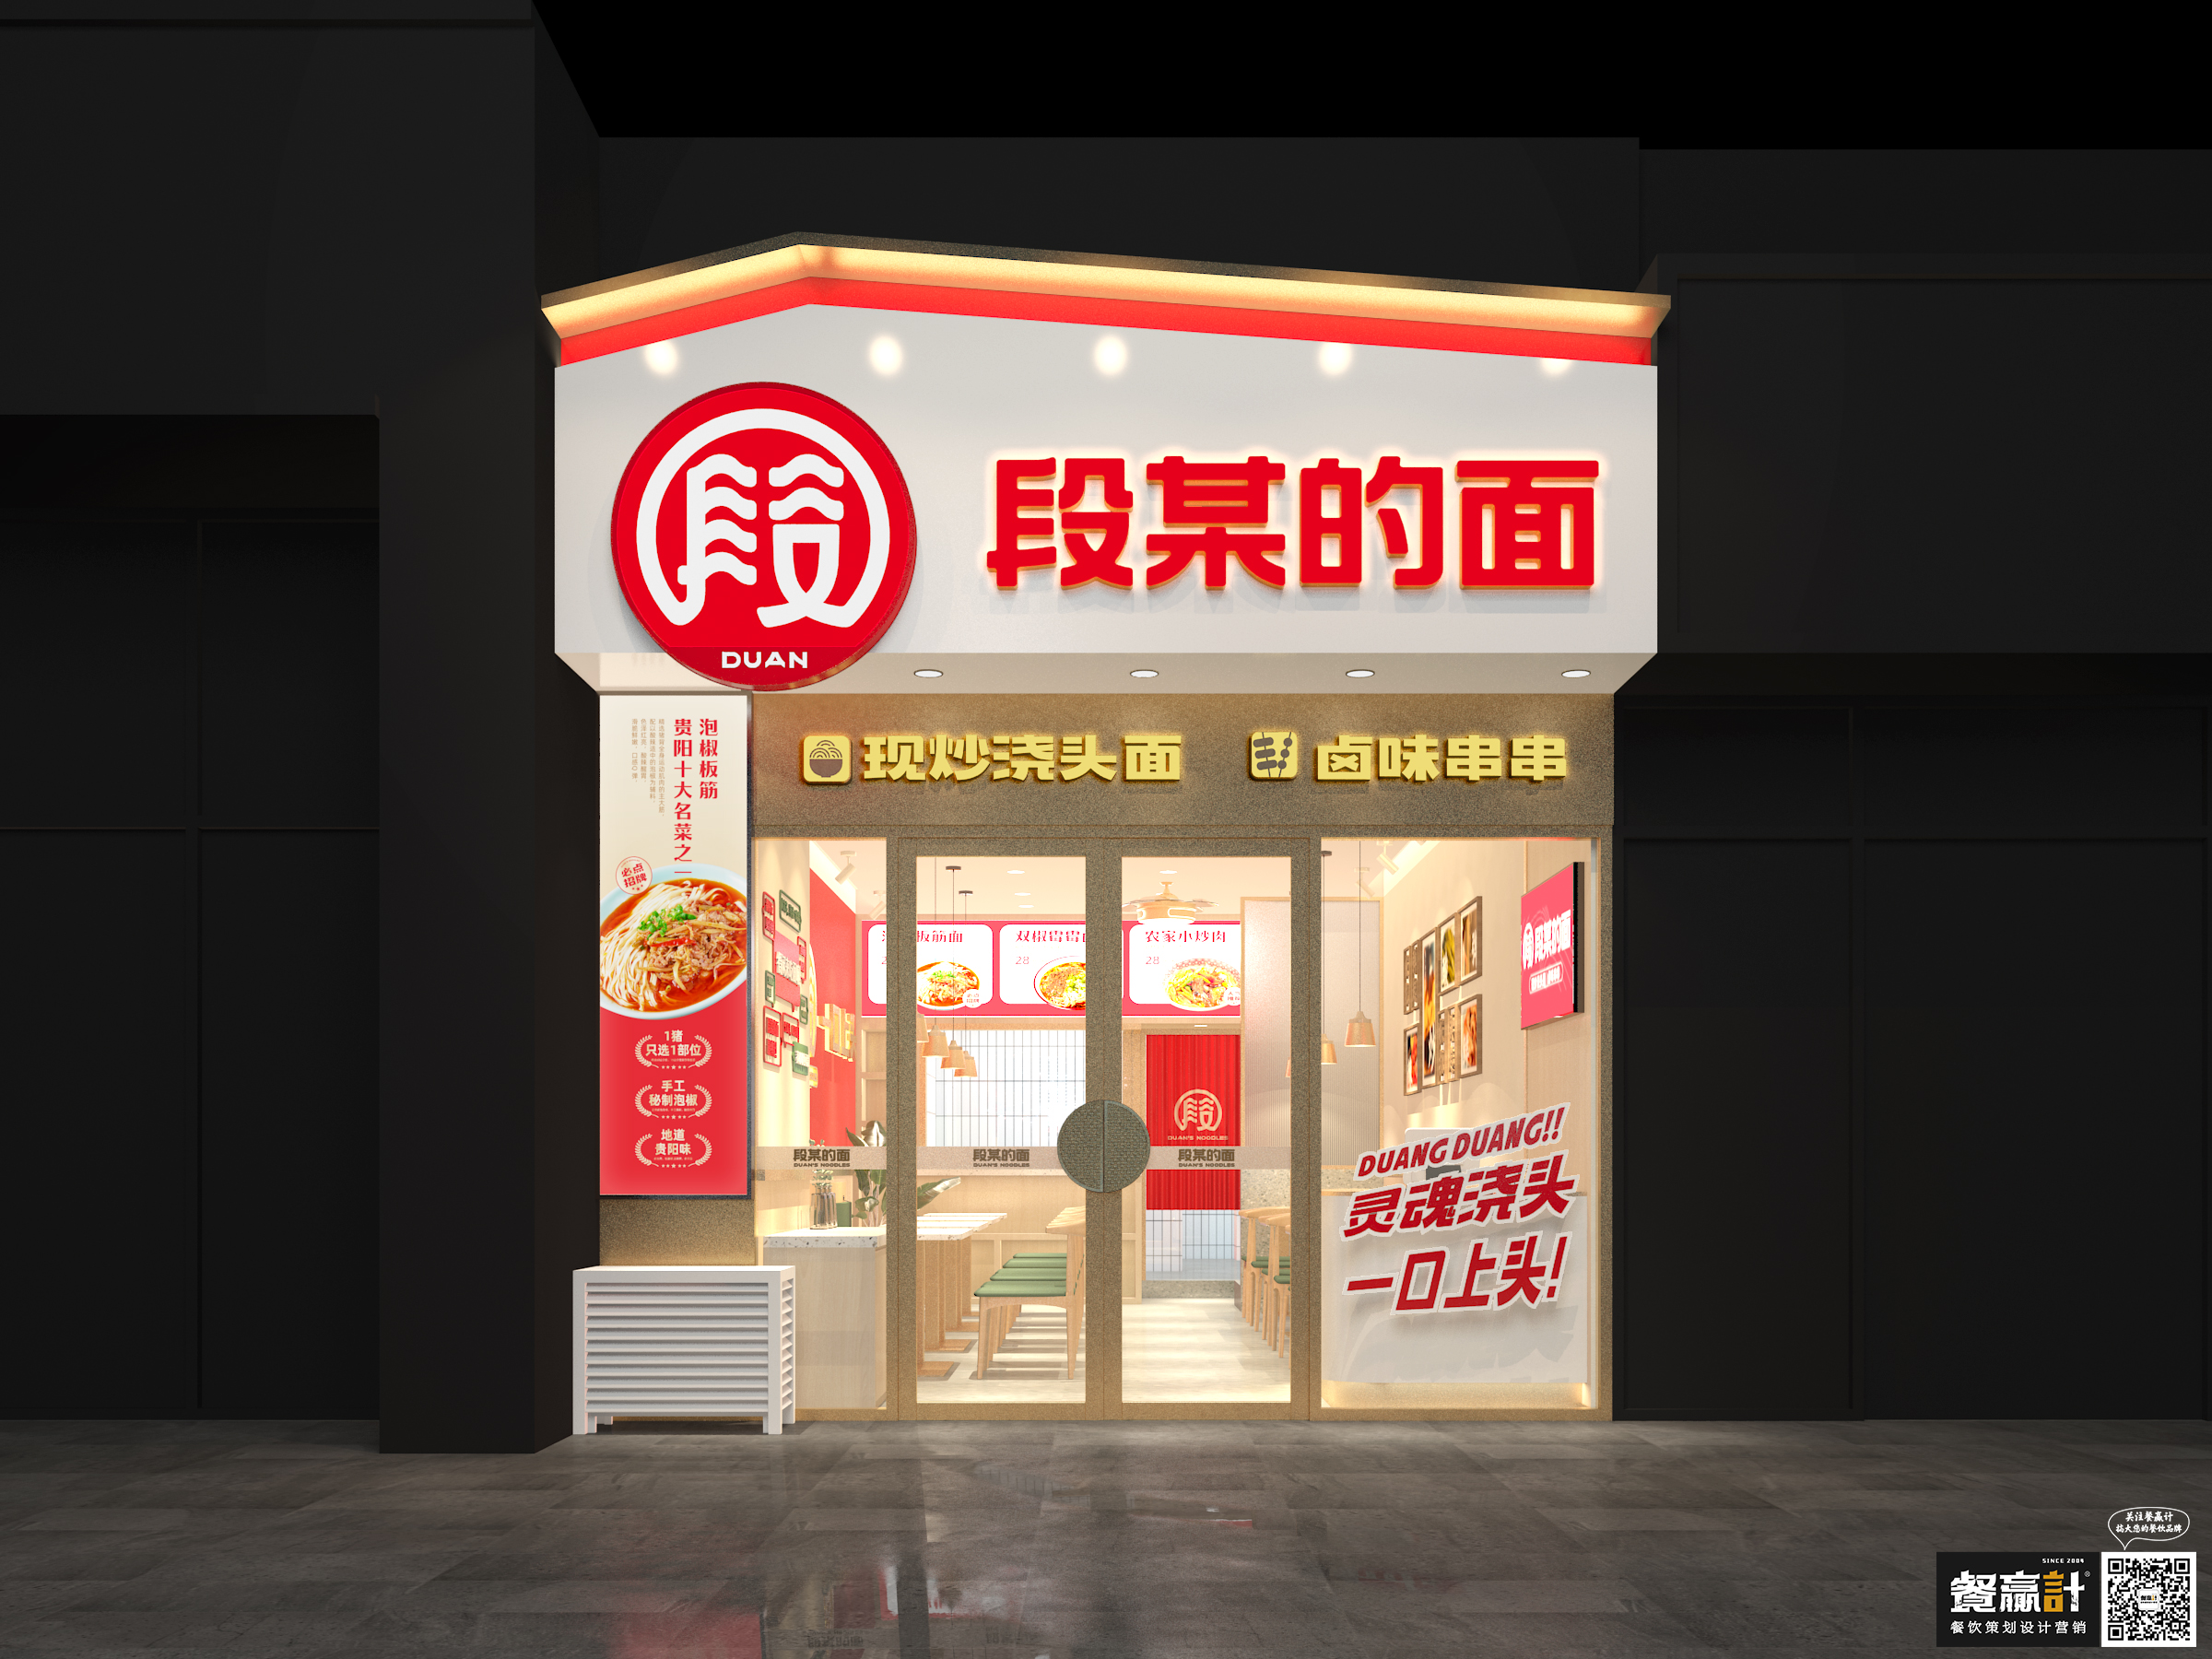 柳州段某的面——贵阳粉面品牌餐饮空间设计